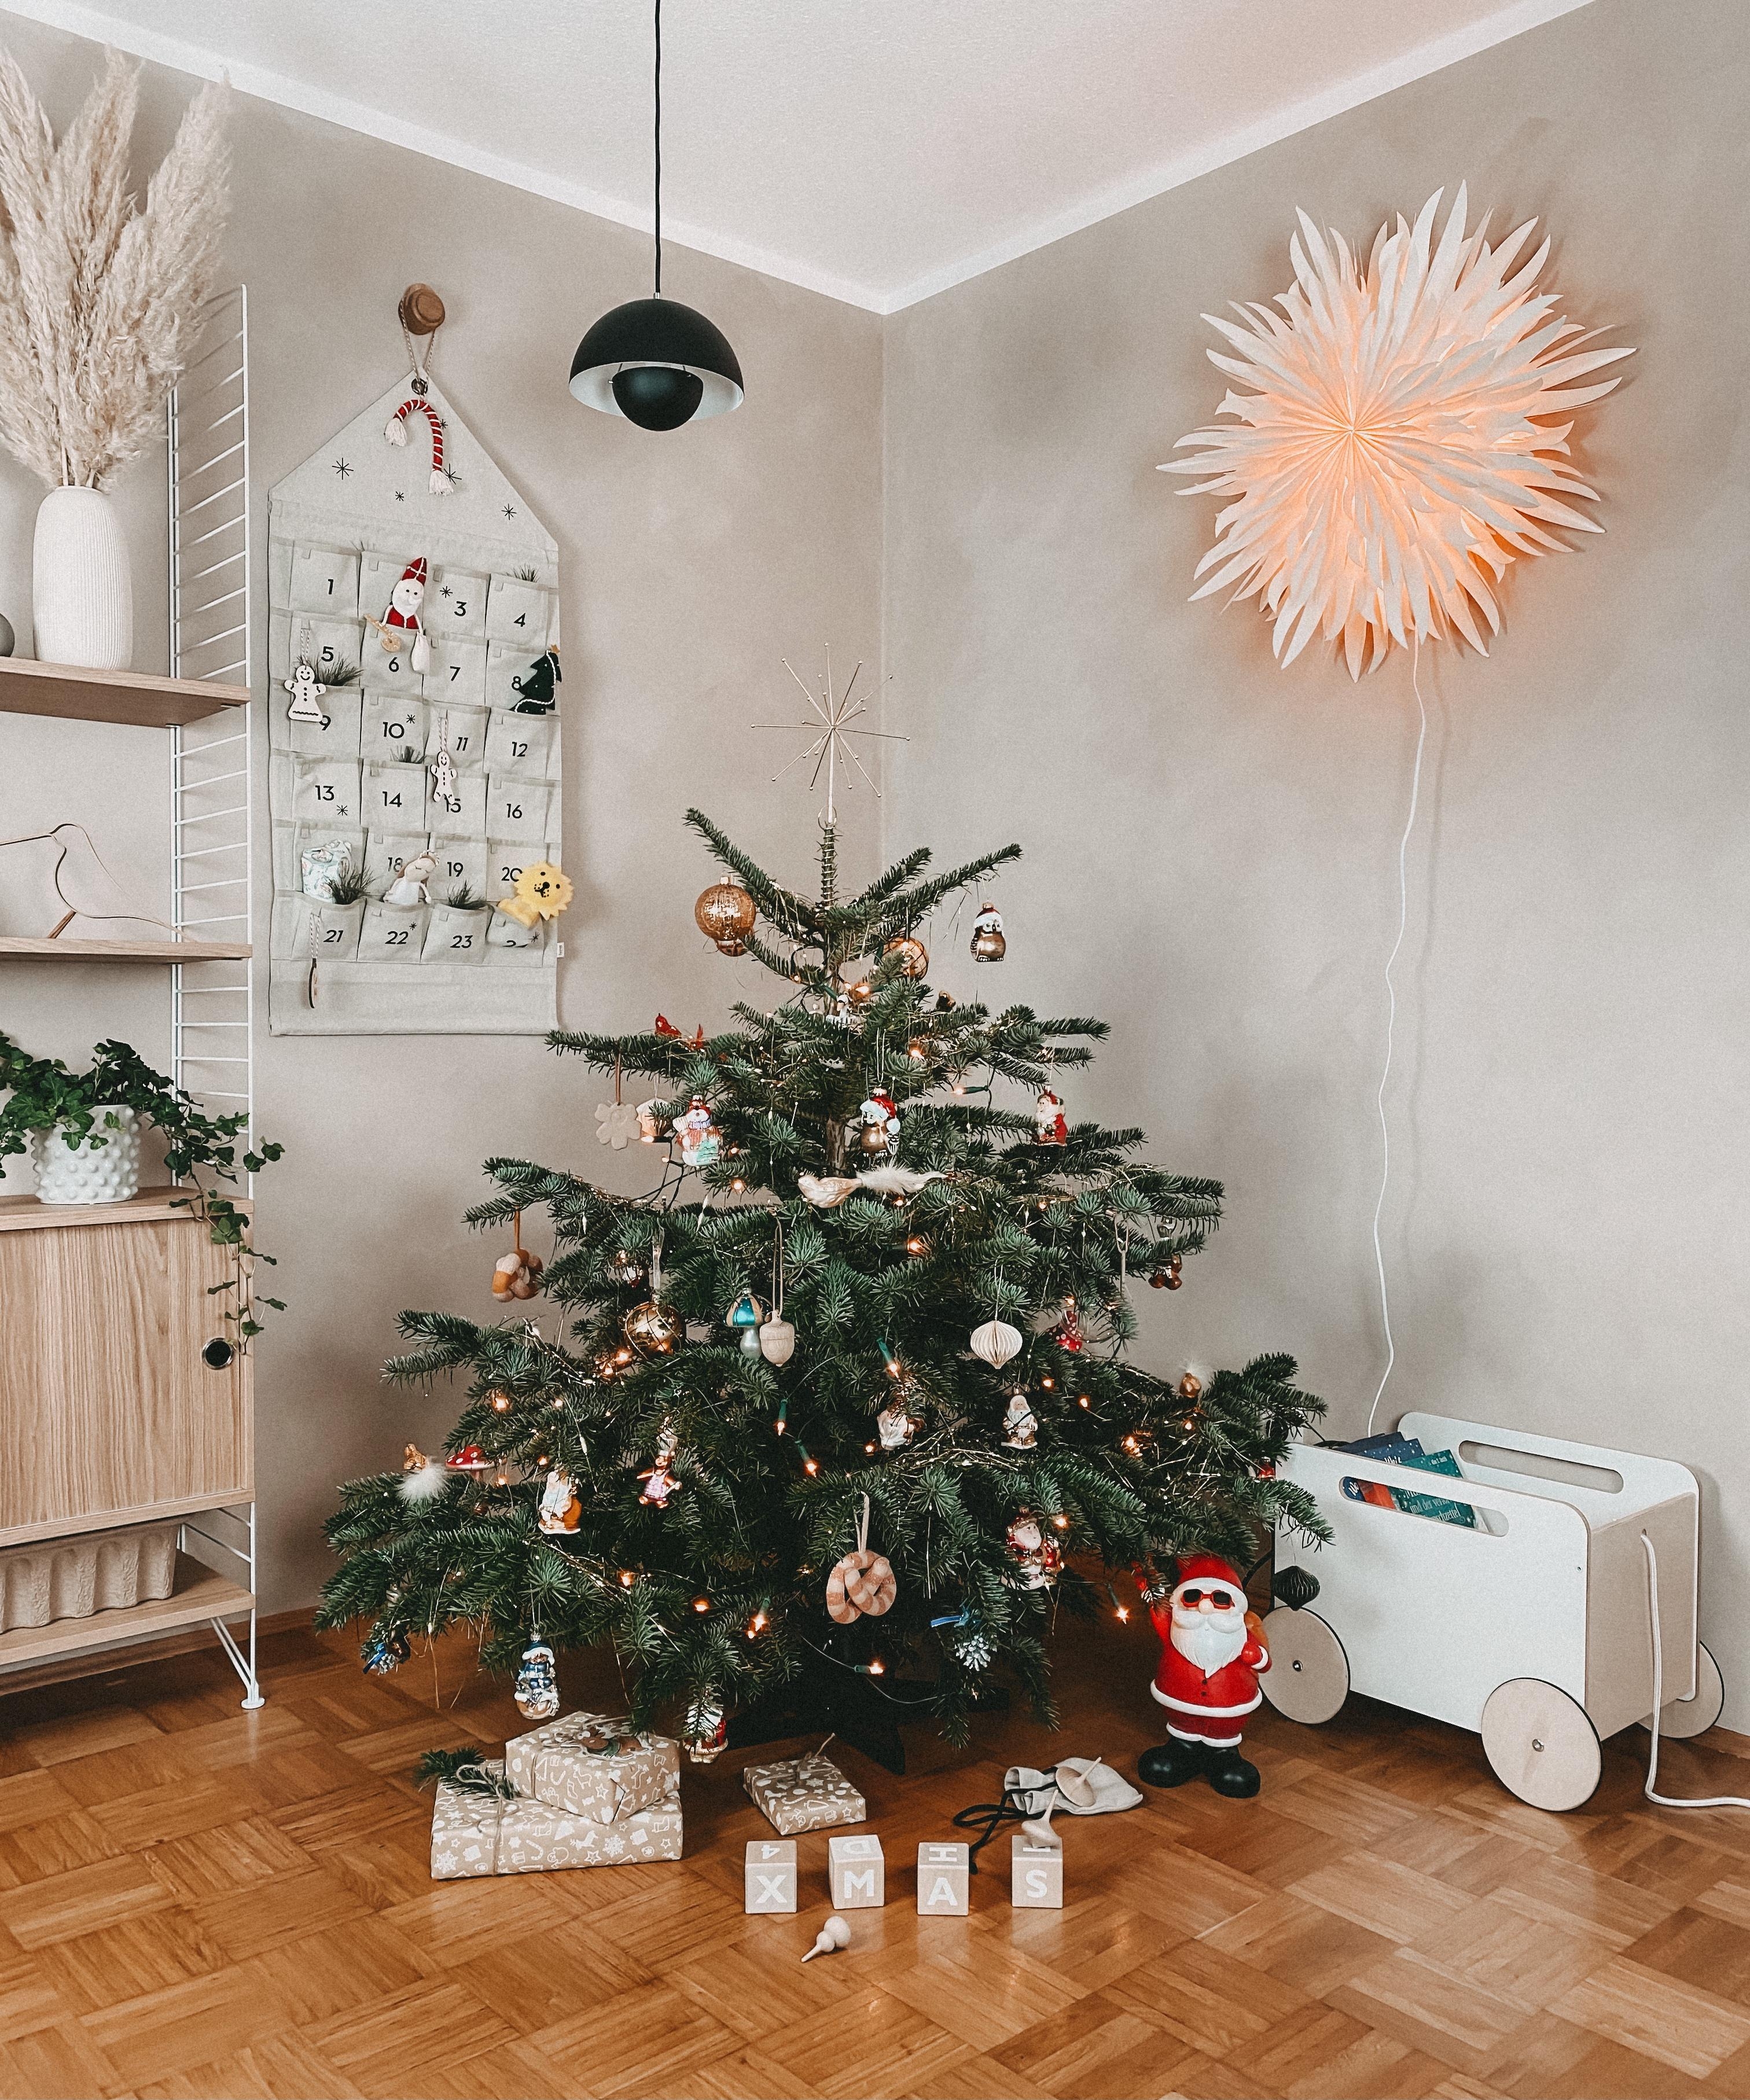 Wir sind bereit 🎄 #weihnachtsbaum #weihnachten #wohnzimmer #kalklitir #christmasmood 